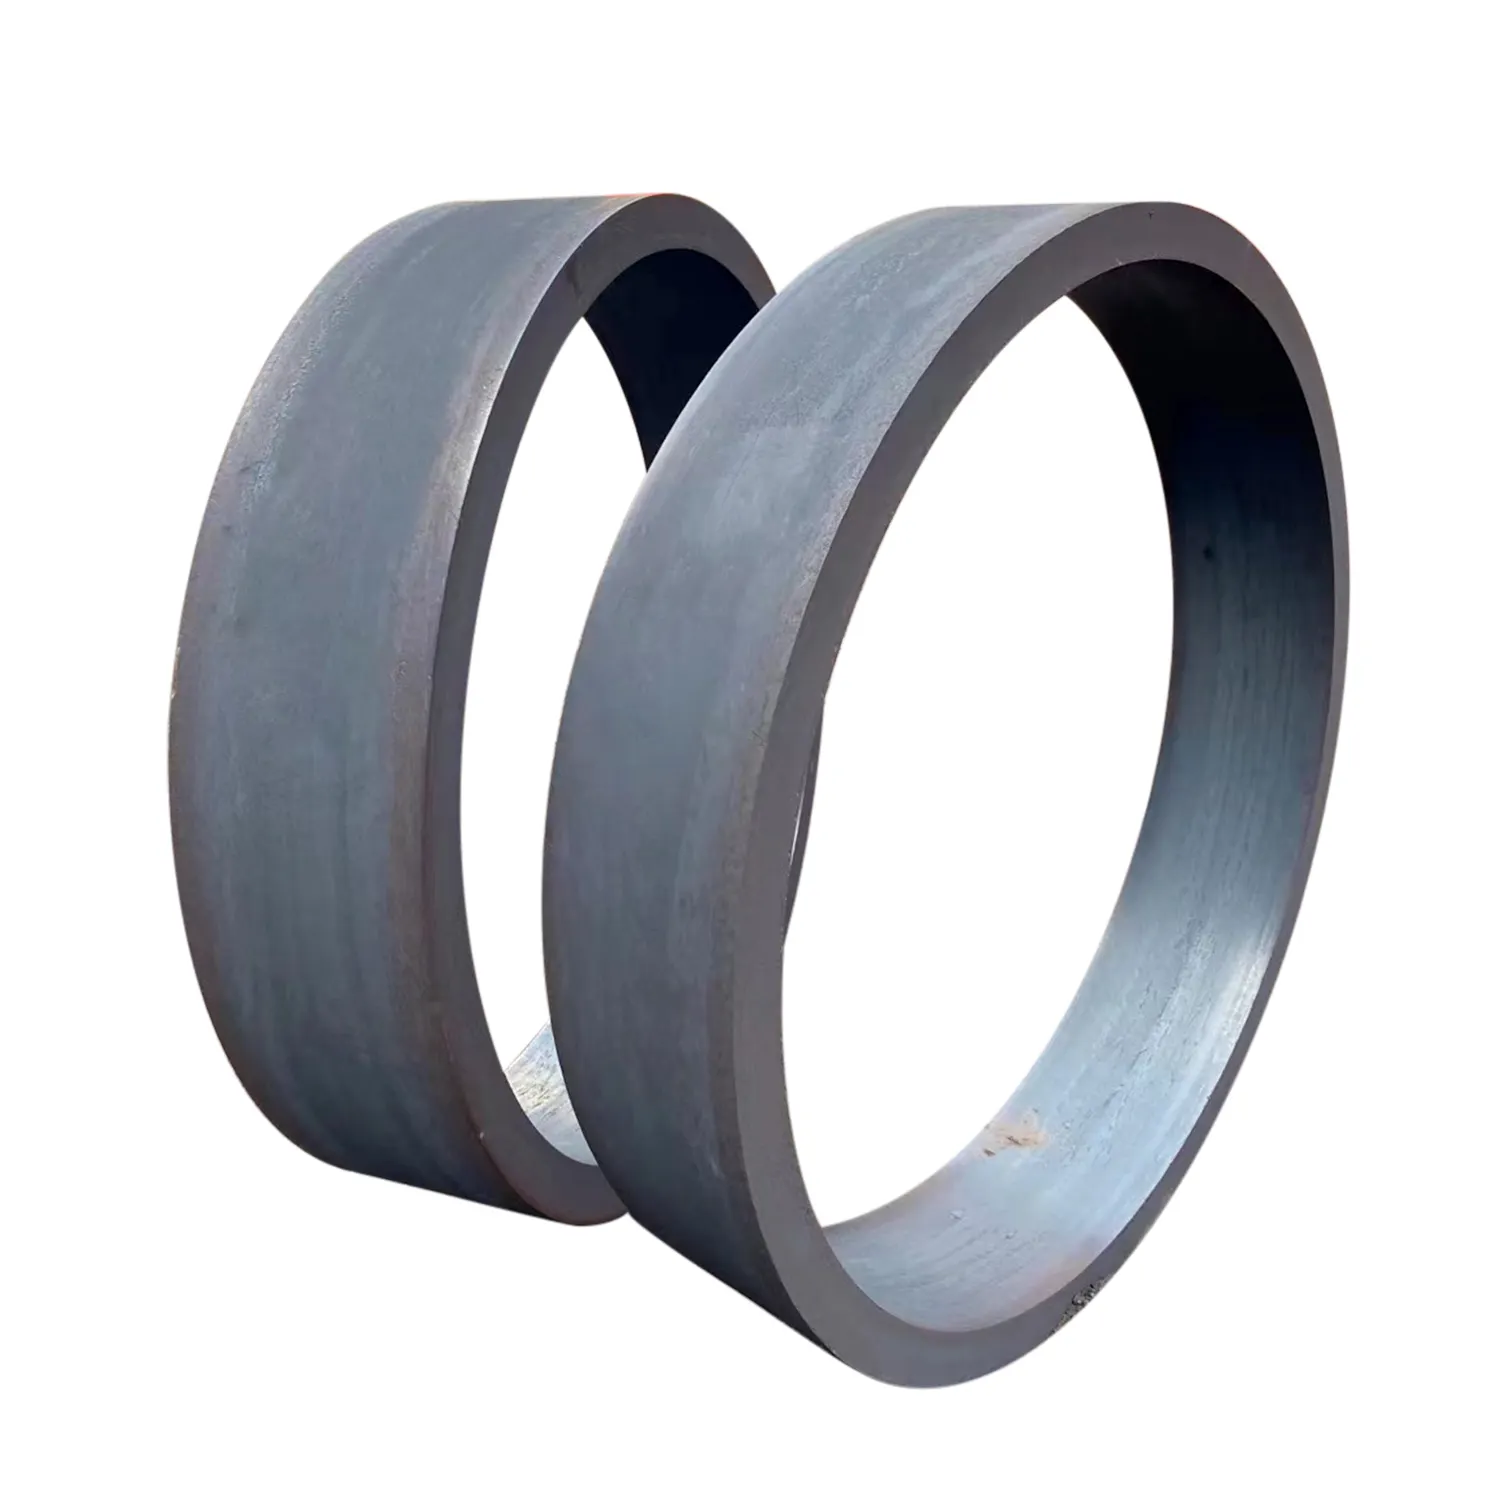 Large diameter steel rings